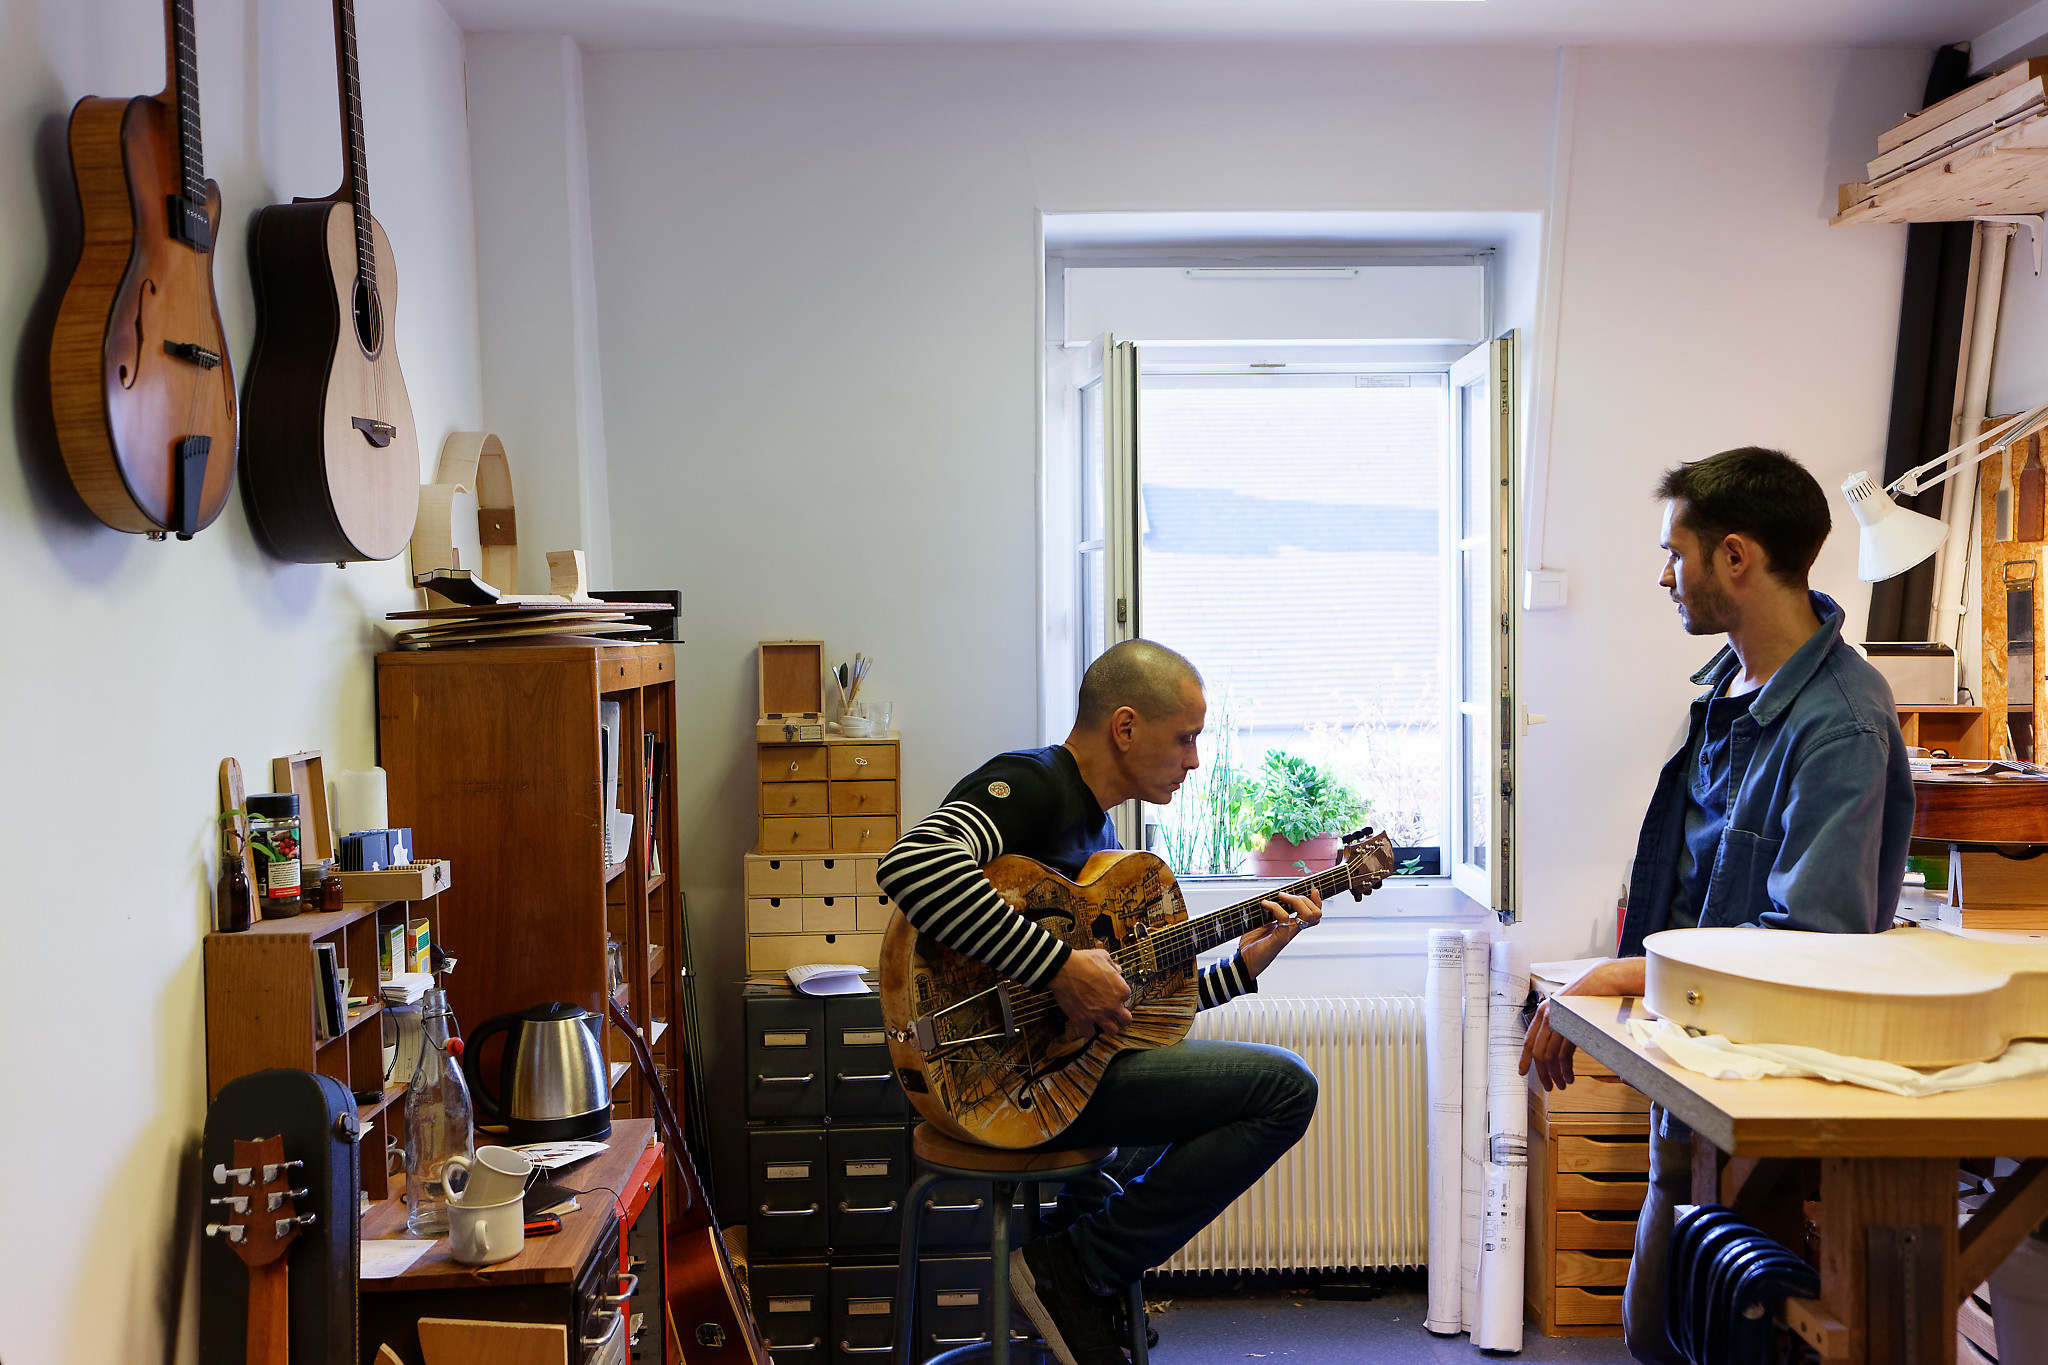 Visite de Ghali Hadefi (musicien
multi-instrumentiste fondateur du Collectif swing manouche) pour la
création de sa nouvelle guitare archtop.